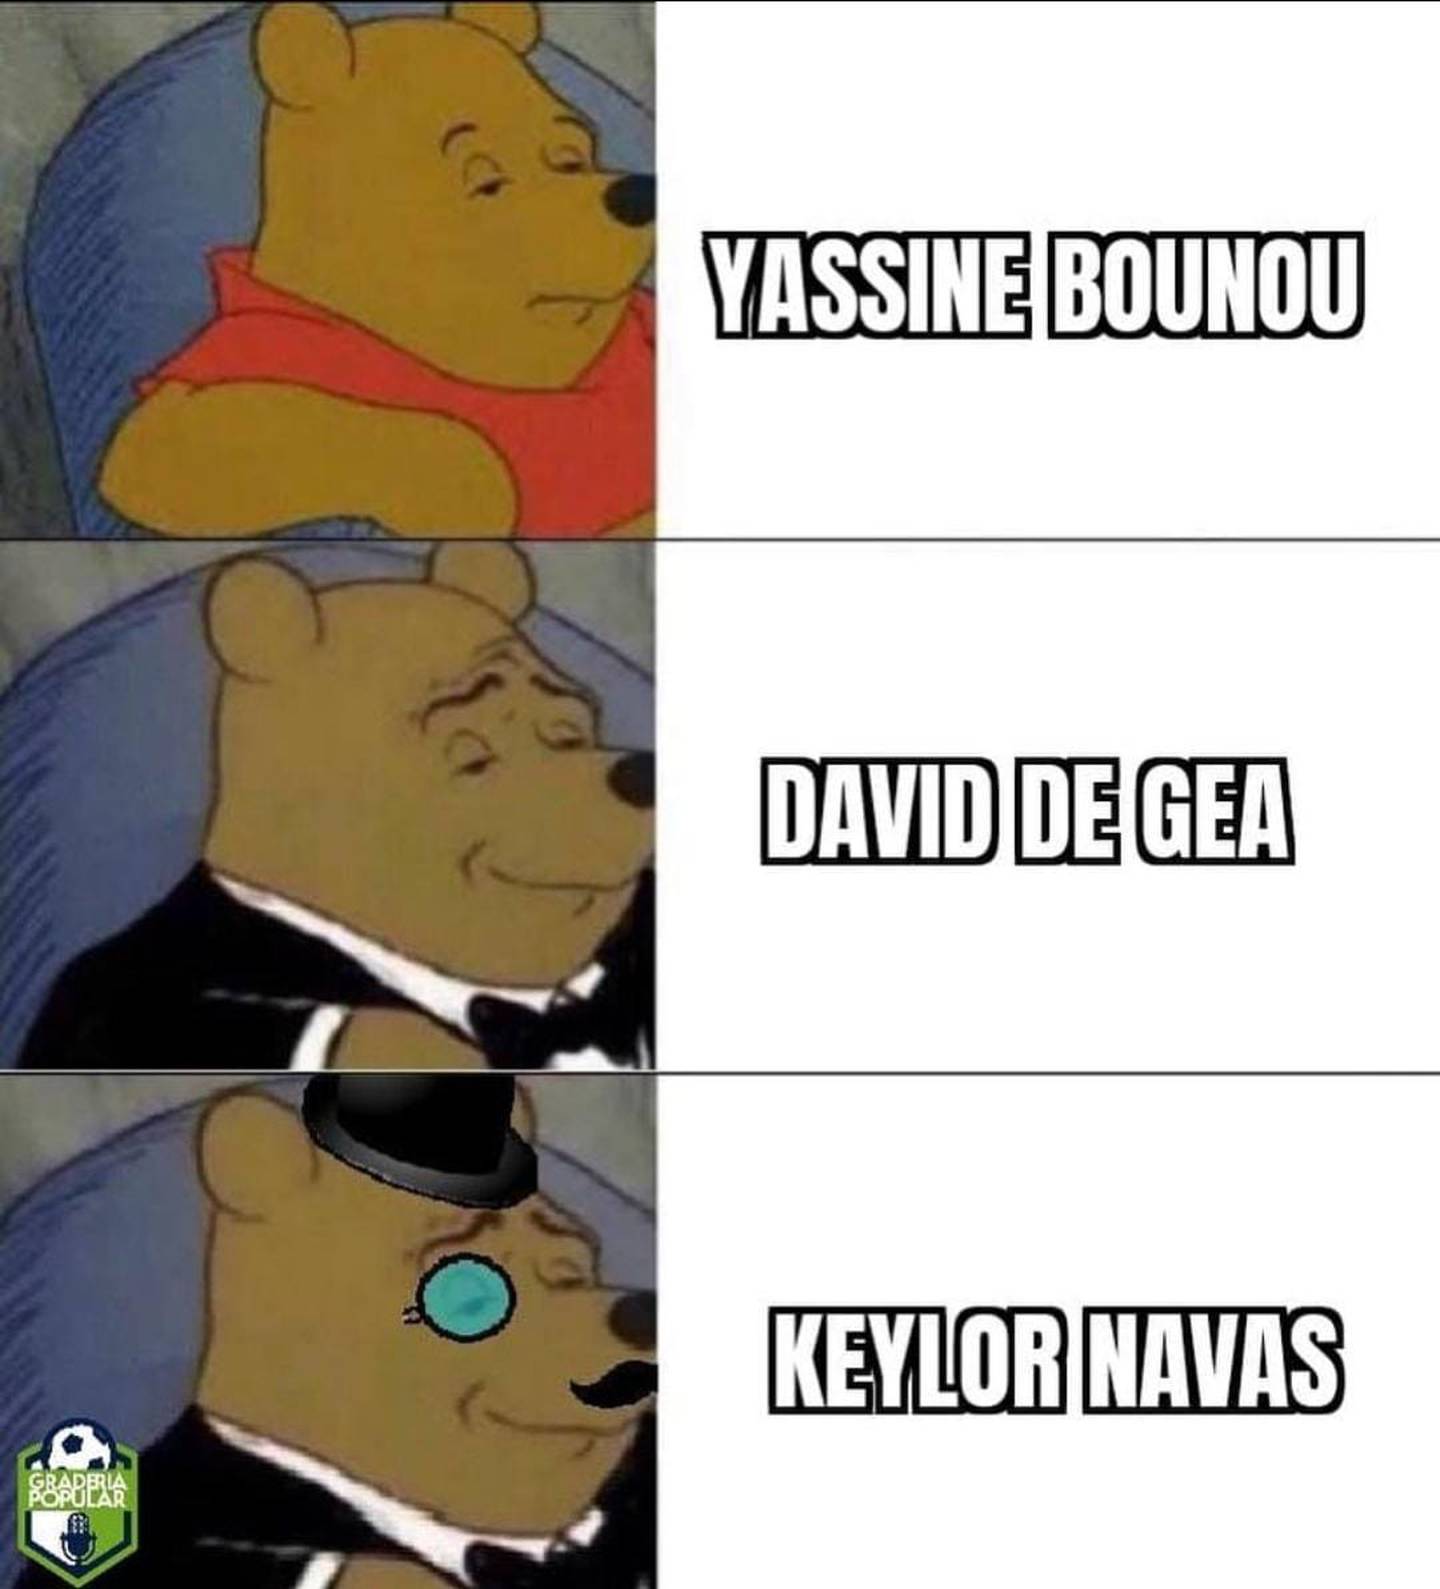 Posible regreso de Keylor Navas al Real Madrid y está generando memes